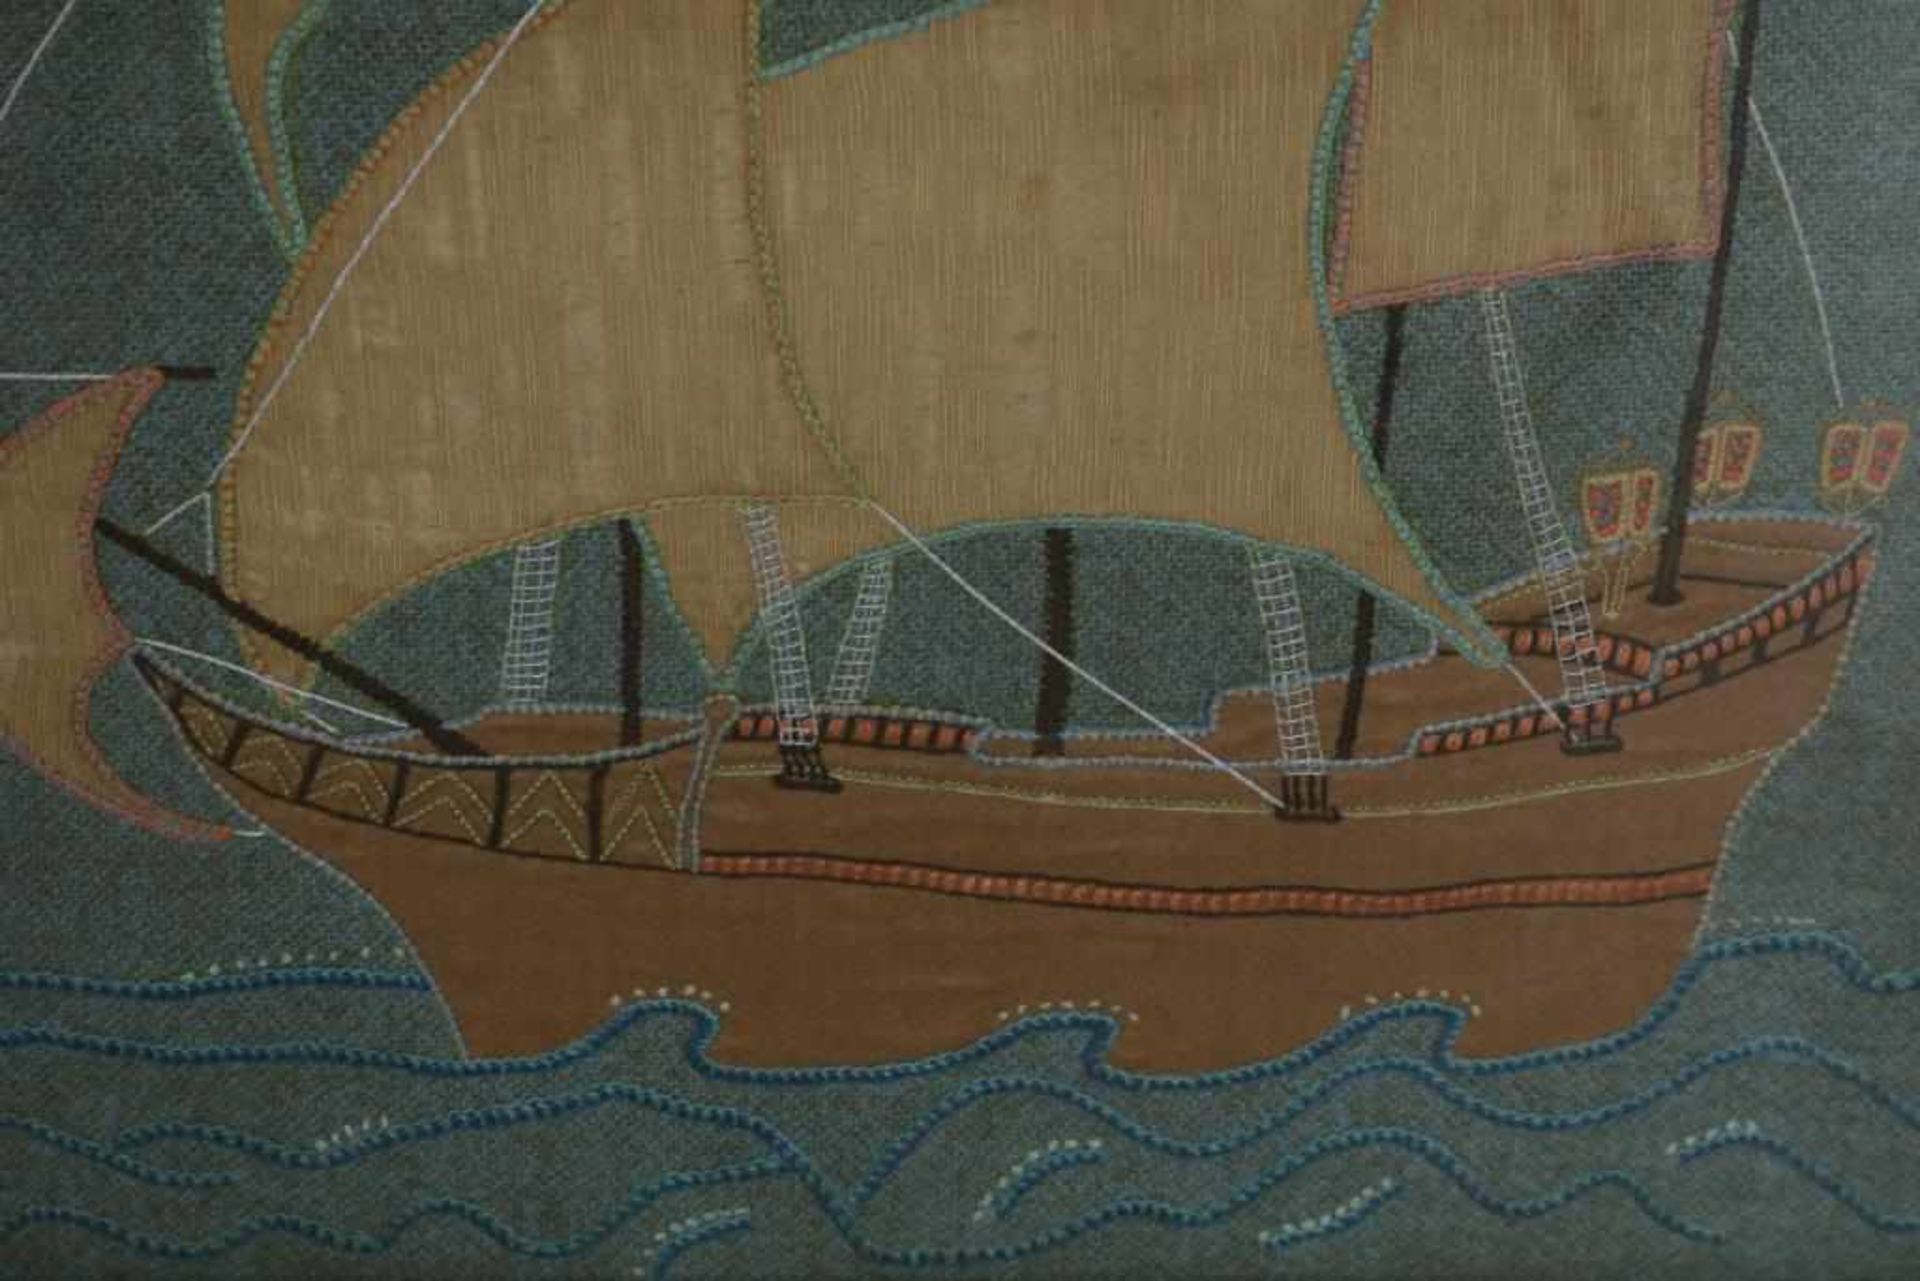 Mahonie haardscherm met geborduurde decoratie van zeilschip, h. 86 cm. - Bild 2 aus 2